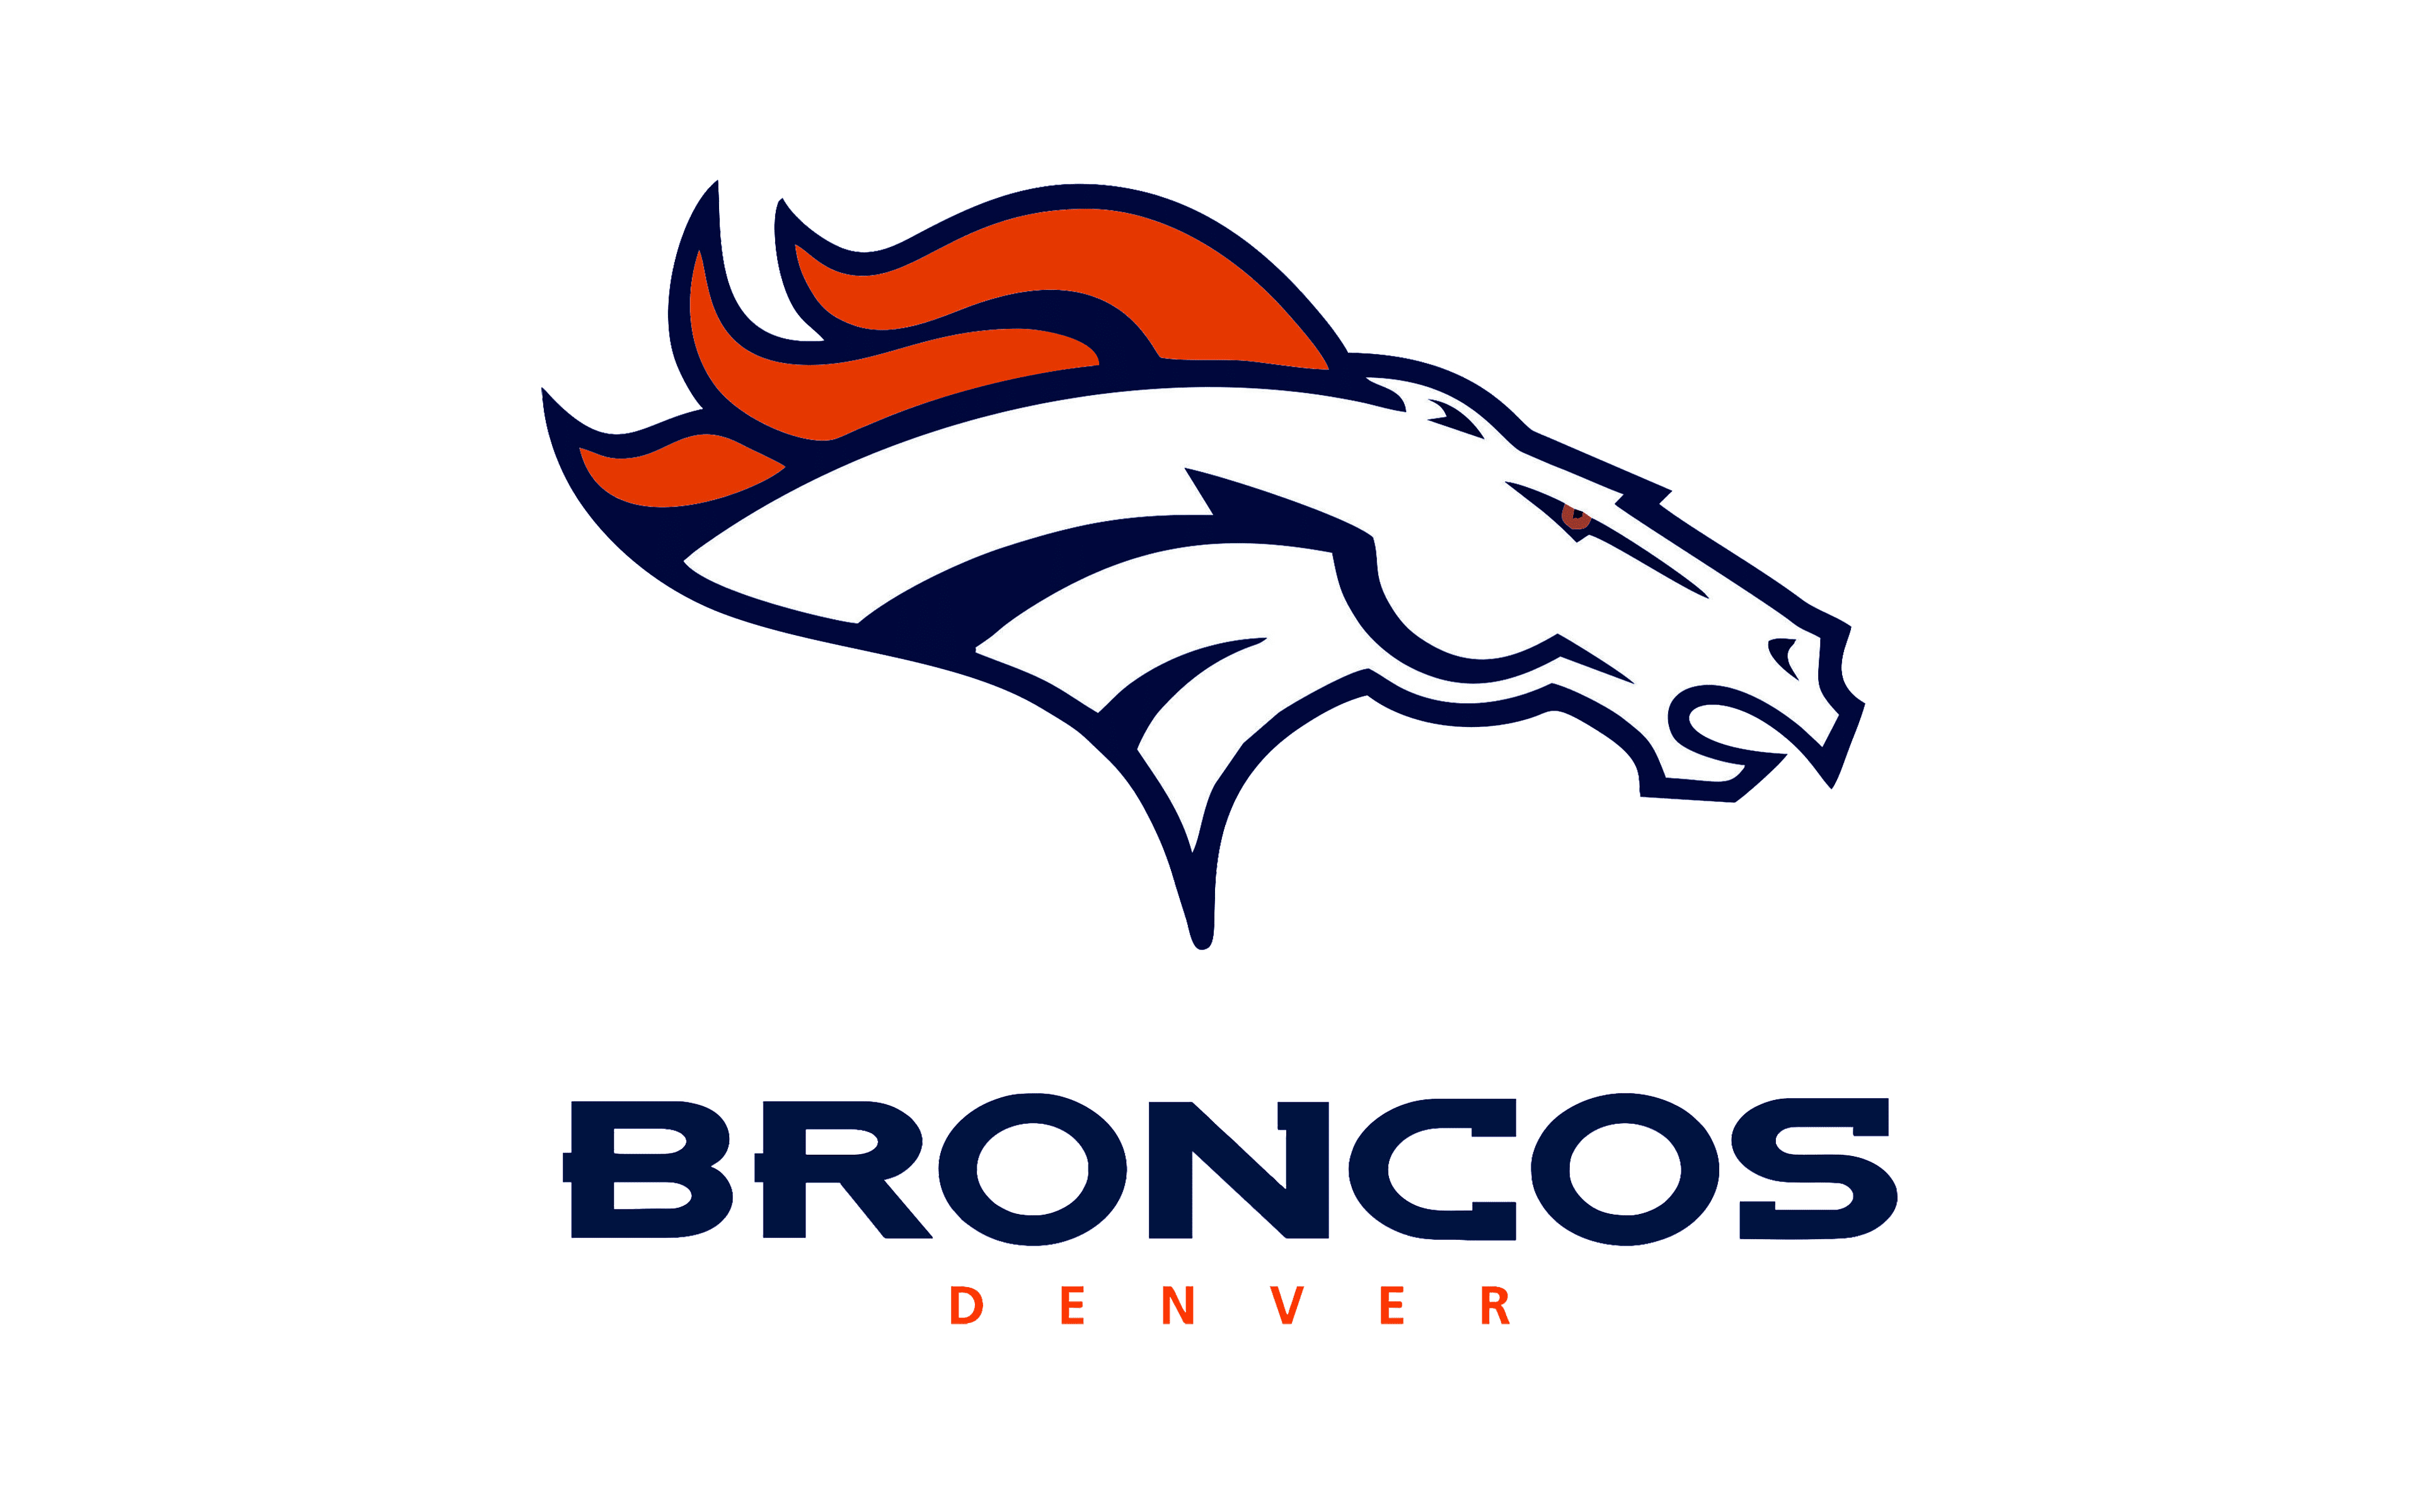 peyton manning broncos logo